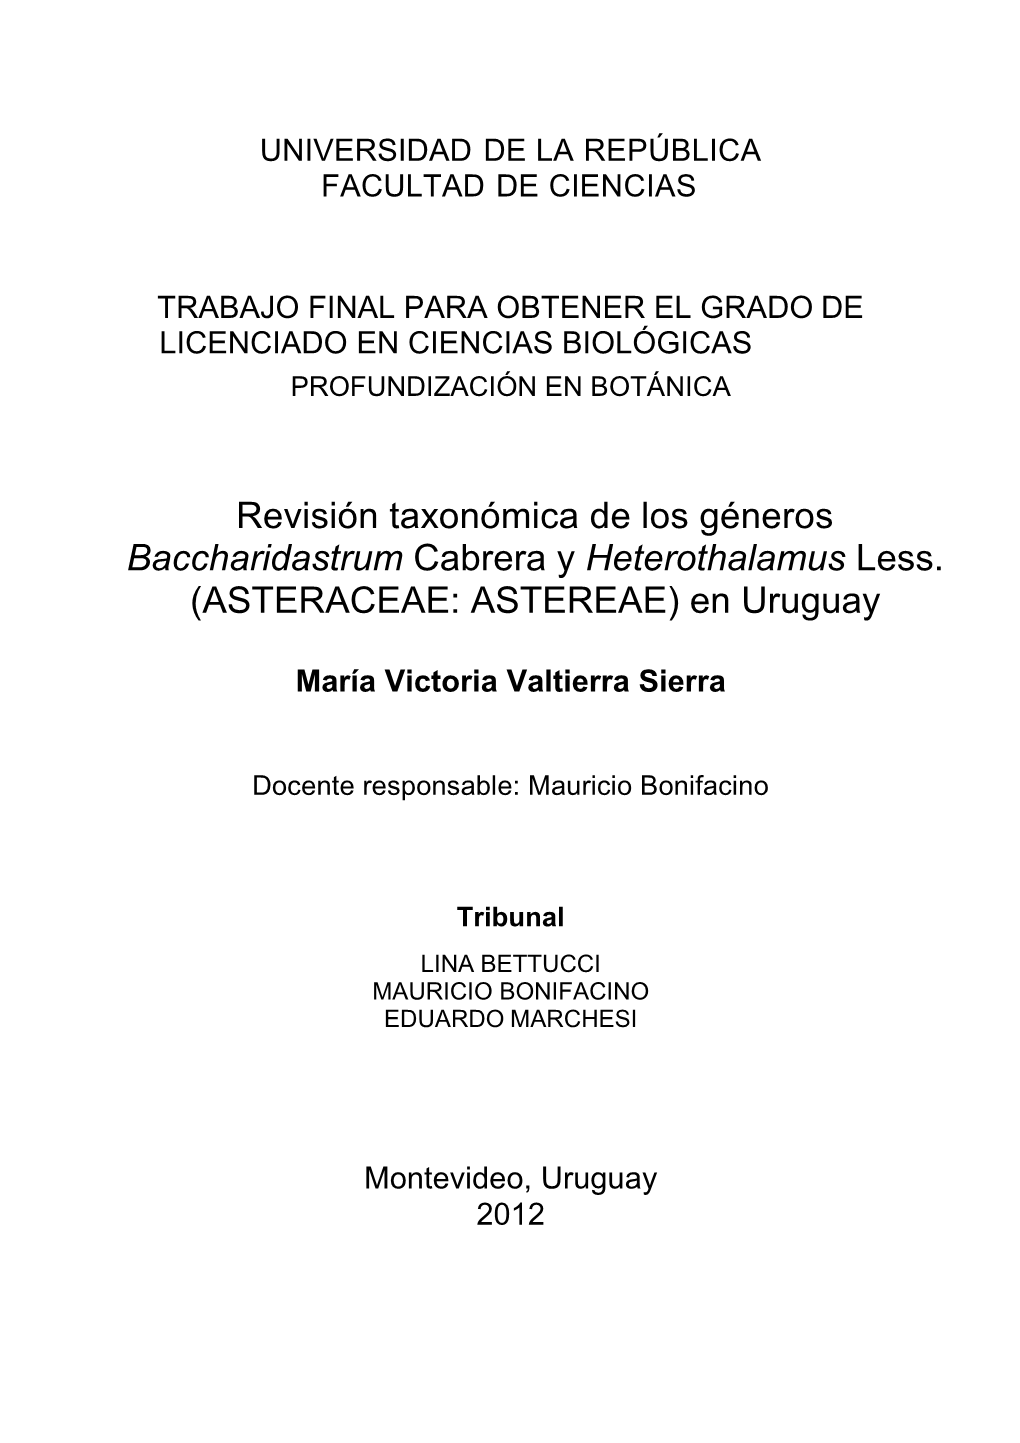 Revisión Taxonómica De Los Géneros Baccharidastrum Cabrera Y Heterothalamus Less. (ASTERACEAE: ASTEREAE) En Uruguay